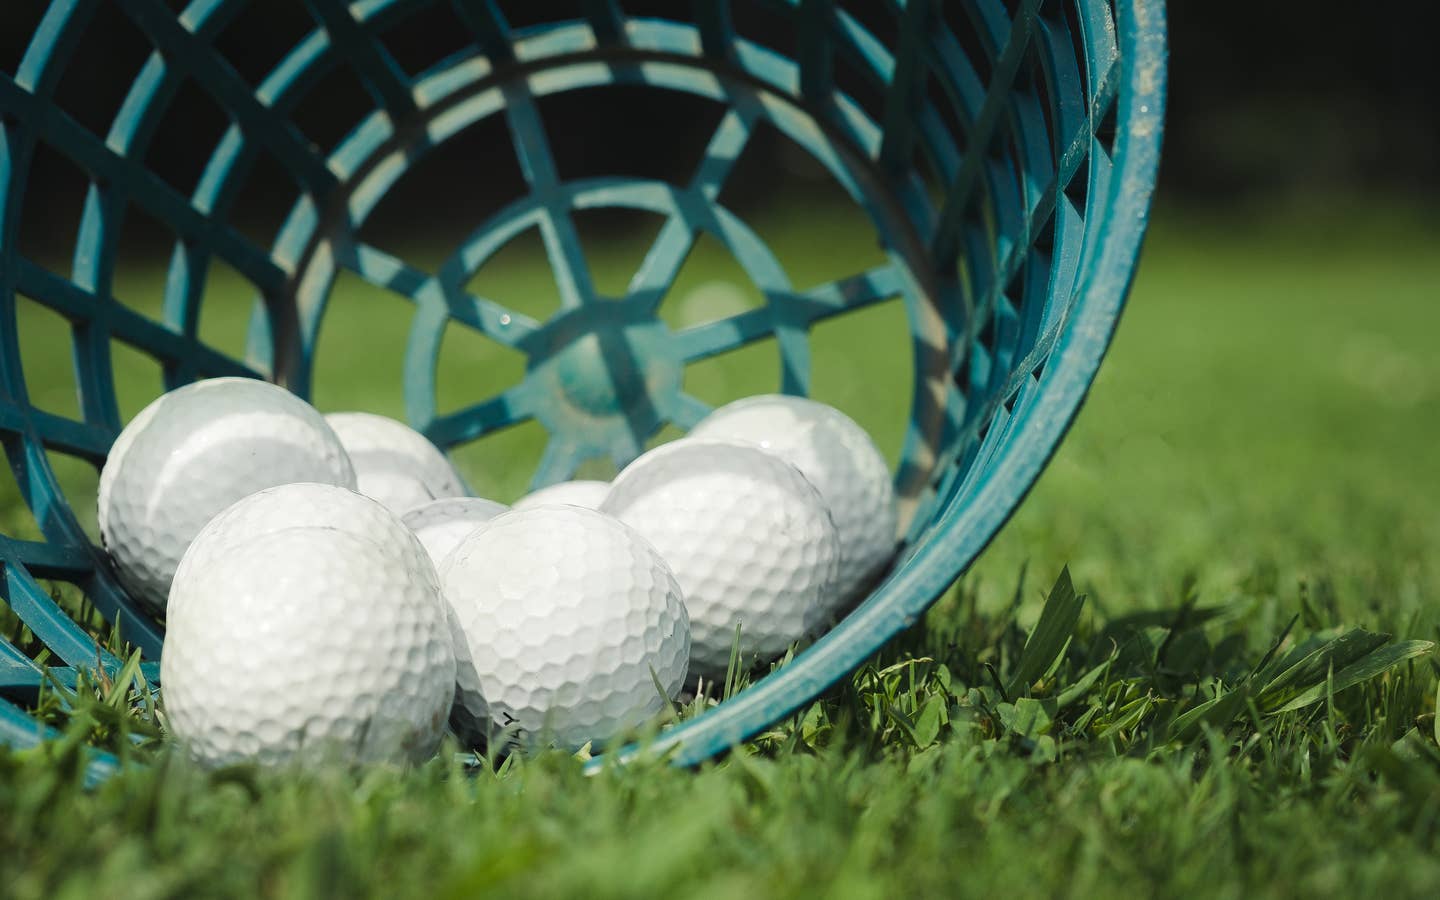 Golf balls in a basket.